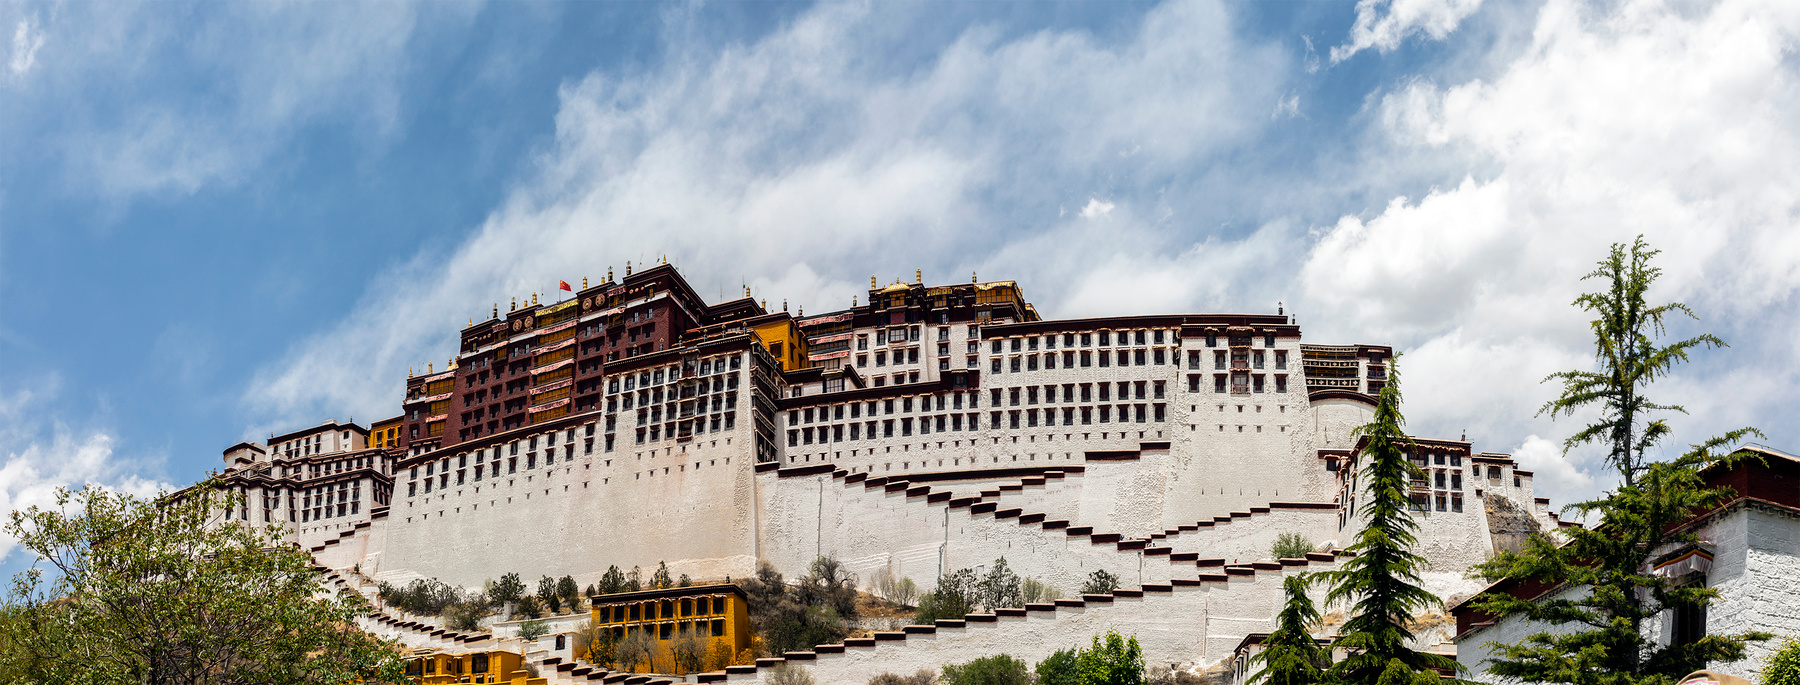 Potala Palace, Tibet Potala Palace Tibet Lhasa